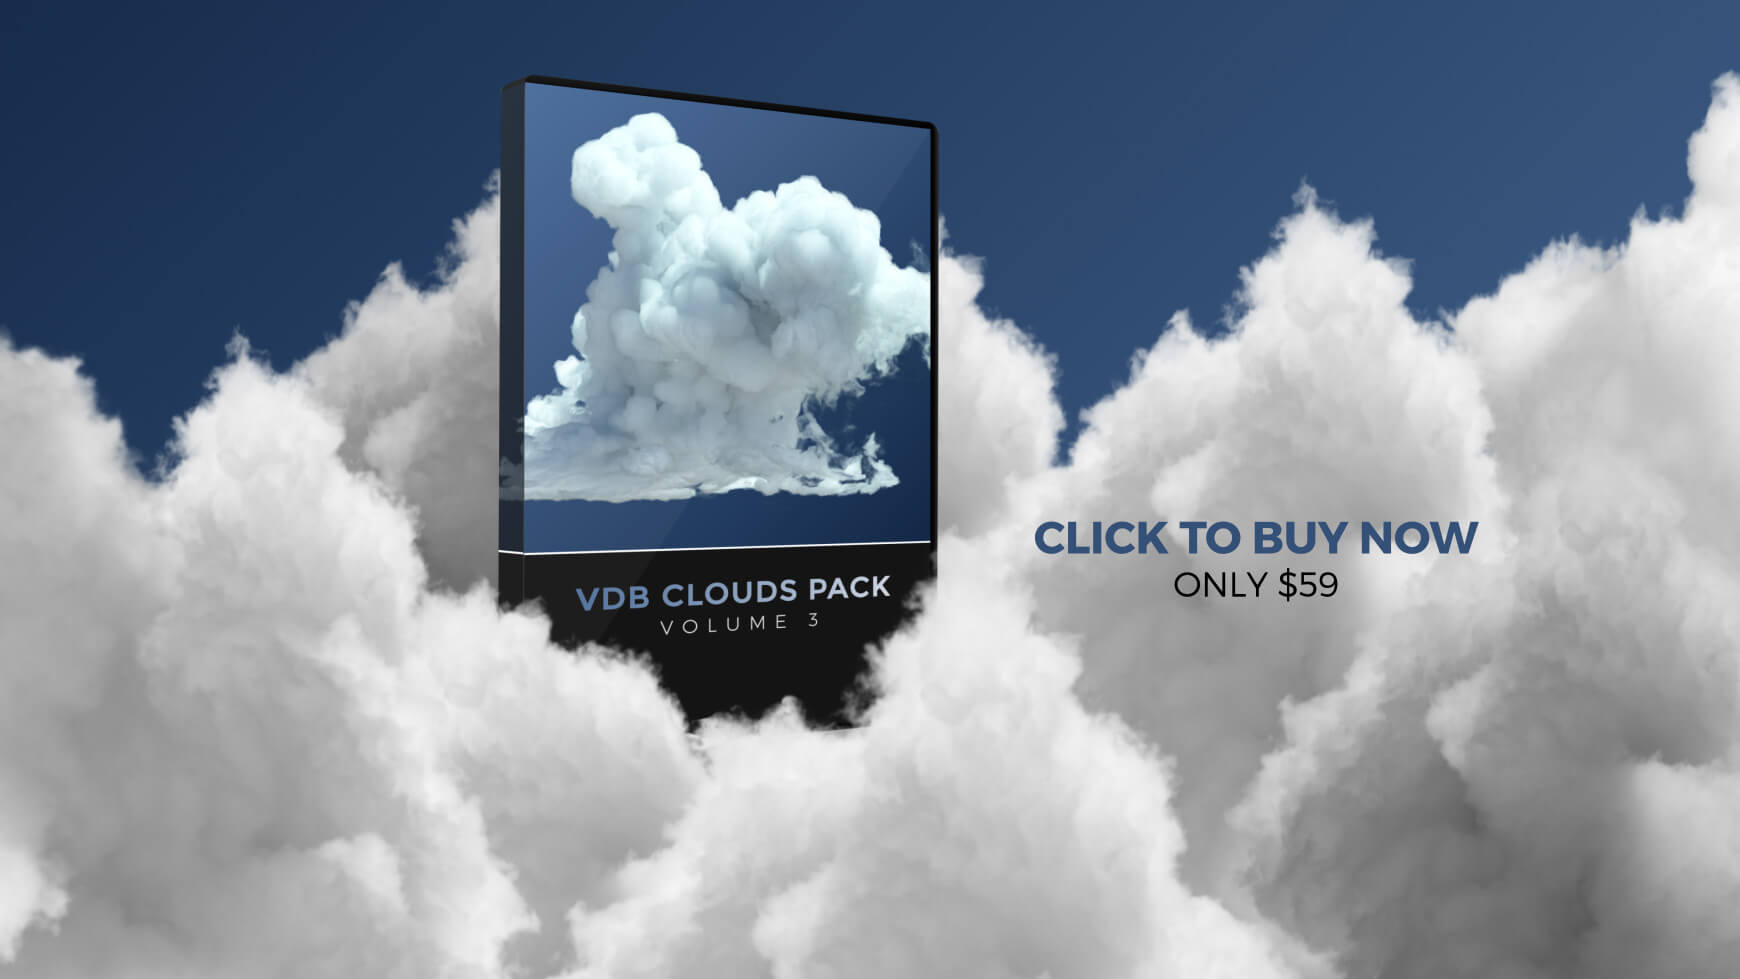 VDB Clouds Pack Volume 3